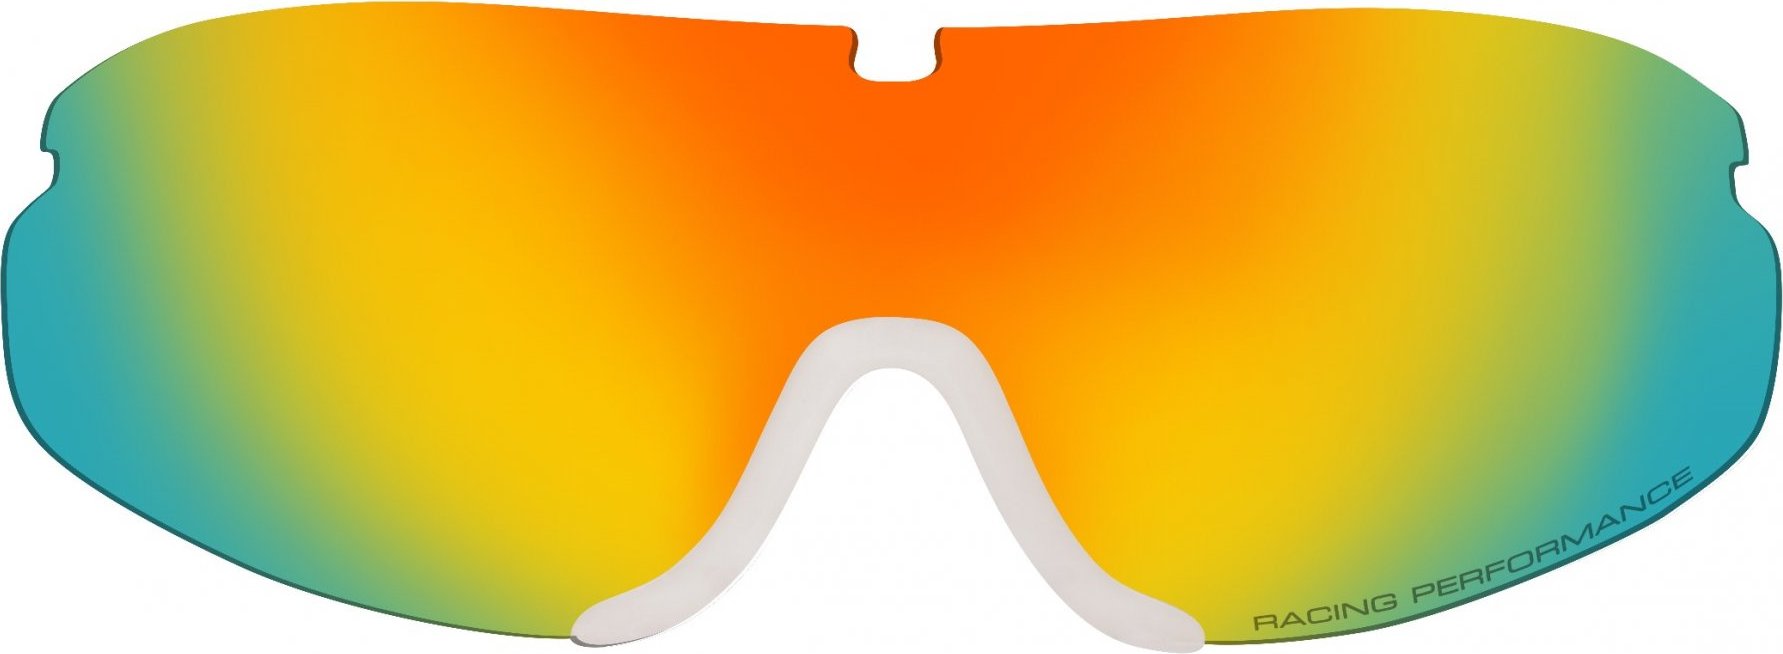 Náhradní čočka RELAX k lyžařským brýlím Cross